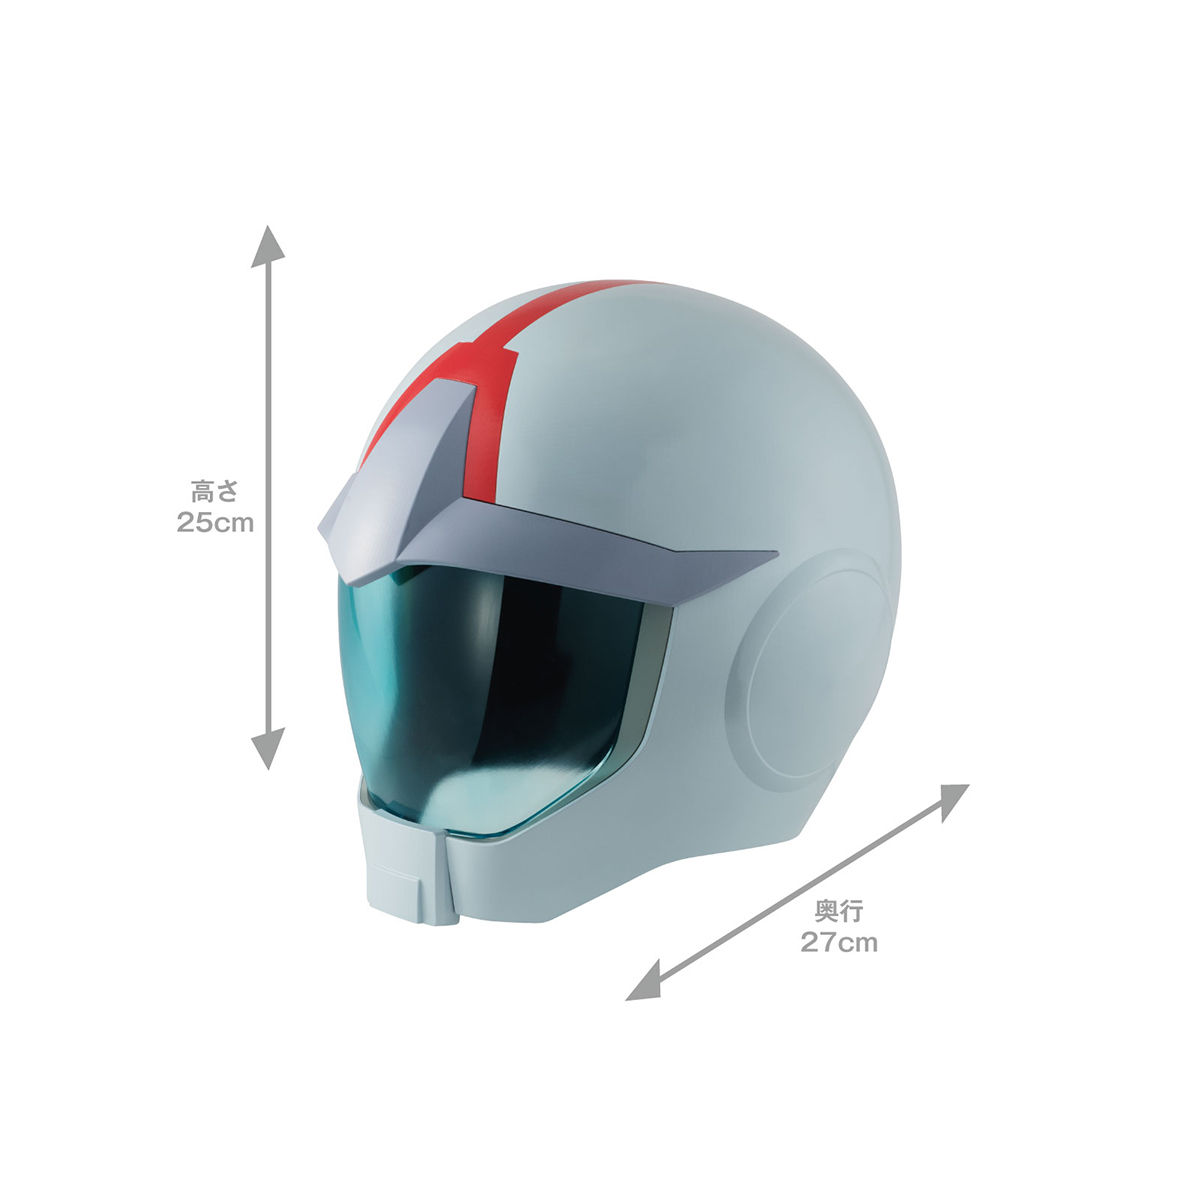 【限定販売】Full Scale Works『地球連邦軍ノーマルスーツ専用ヘルメット』機動戦士ガンダム ディスプレイモデル-009